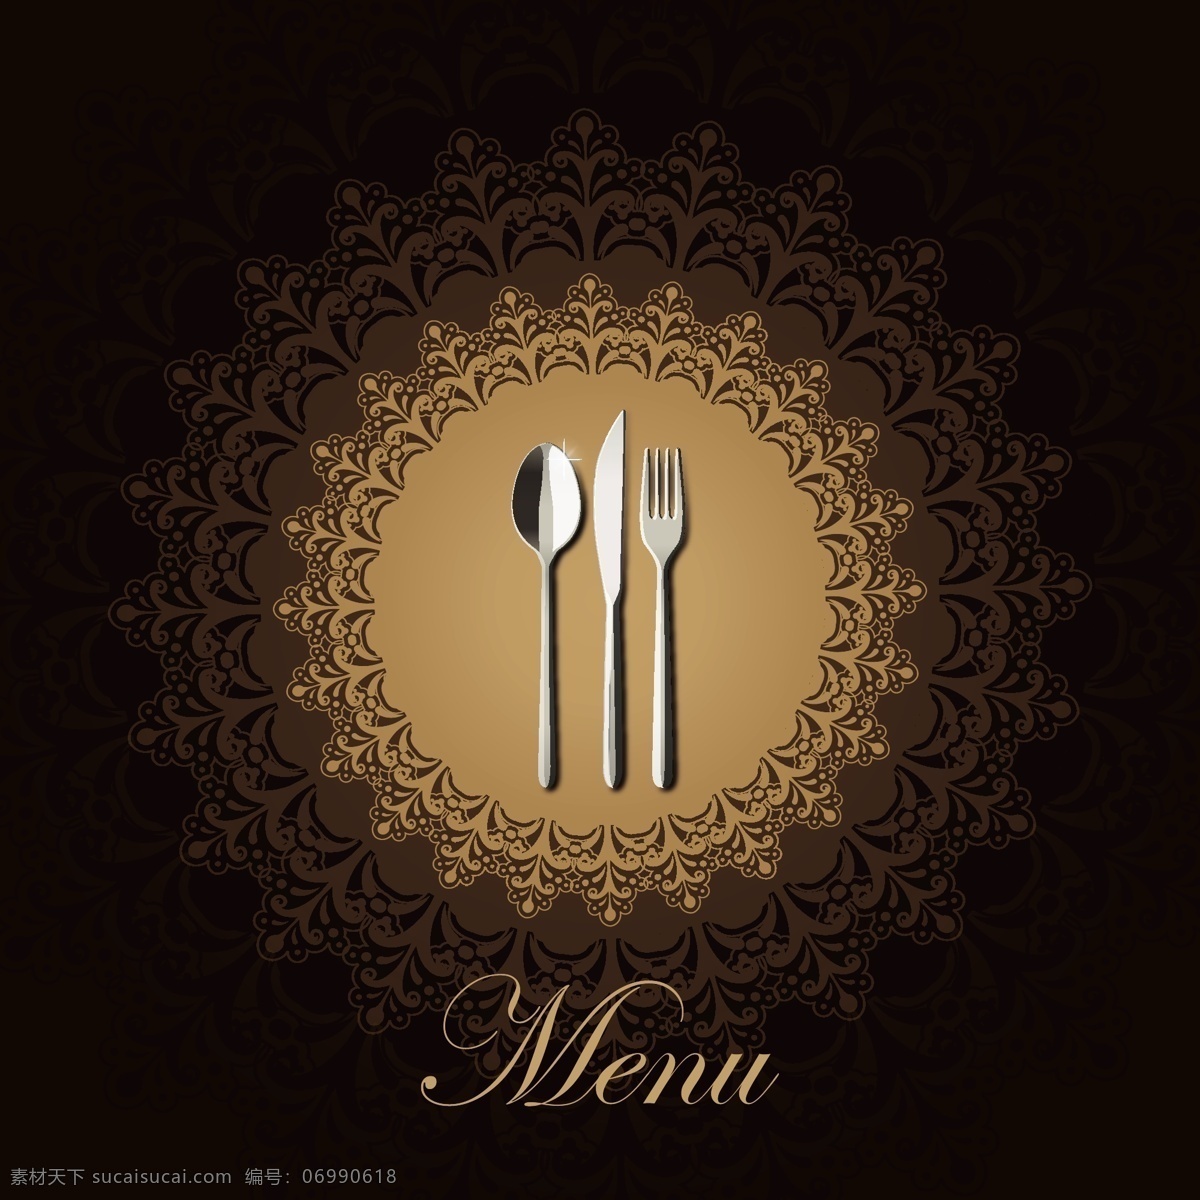 欧洲 菜单 封面设计 矢量 餐具 模式 阴影 盖 矢量图